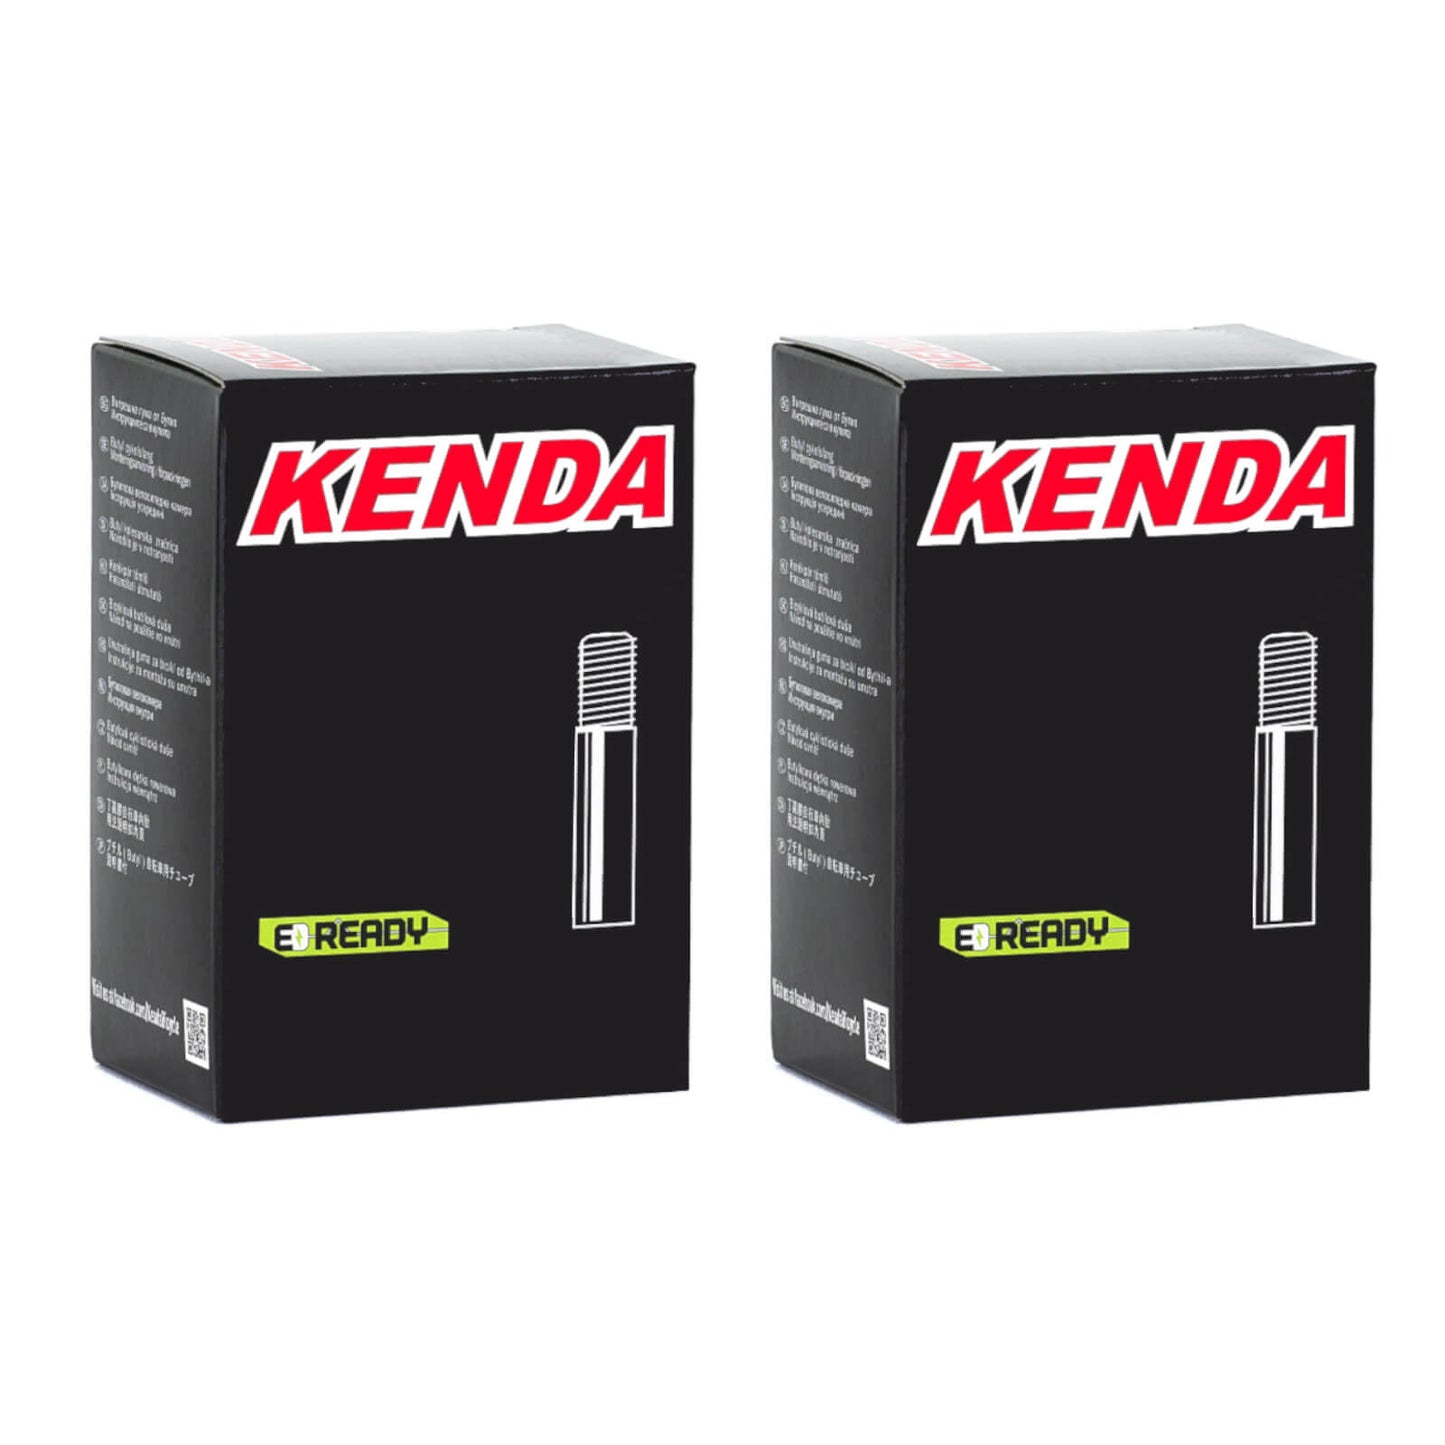 Kenda 16x1-1/4"-1-3/8"" 16 Inch Schrader Valve Bike Inner Tube Pack of 2